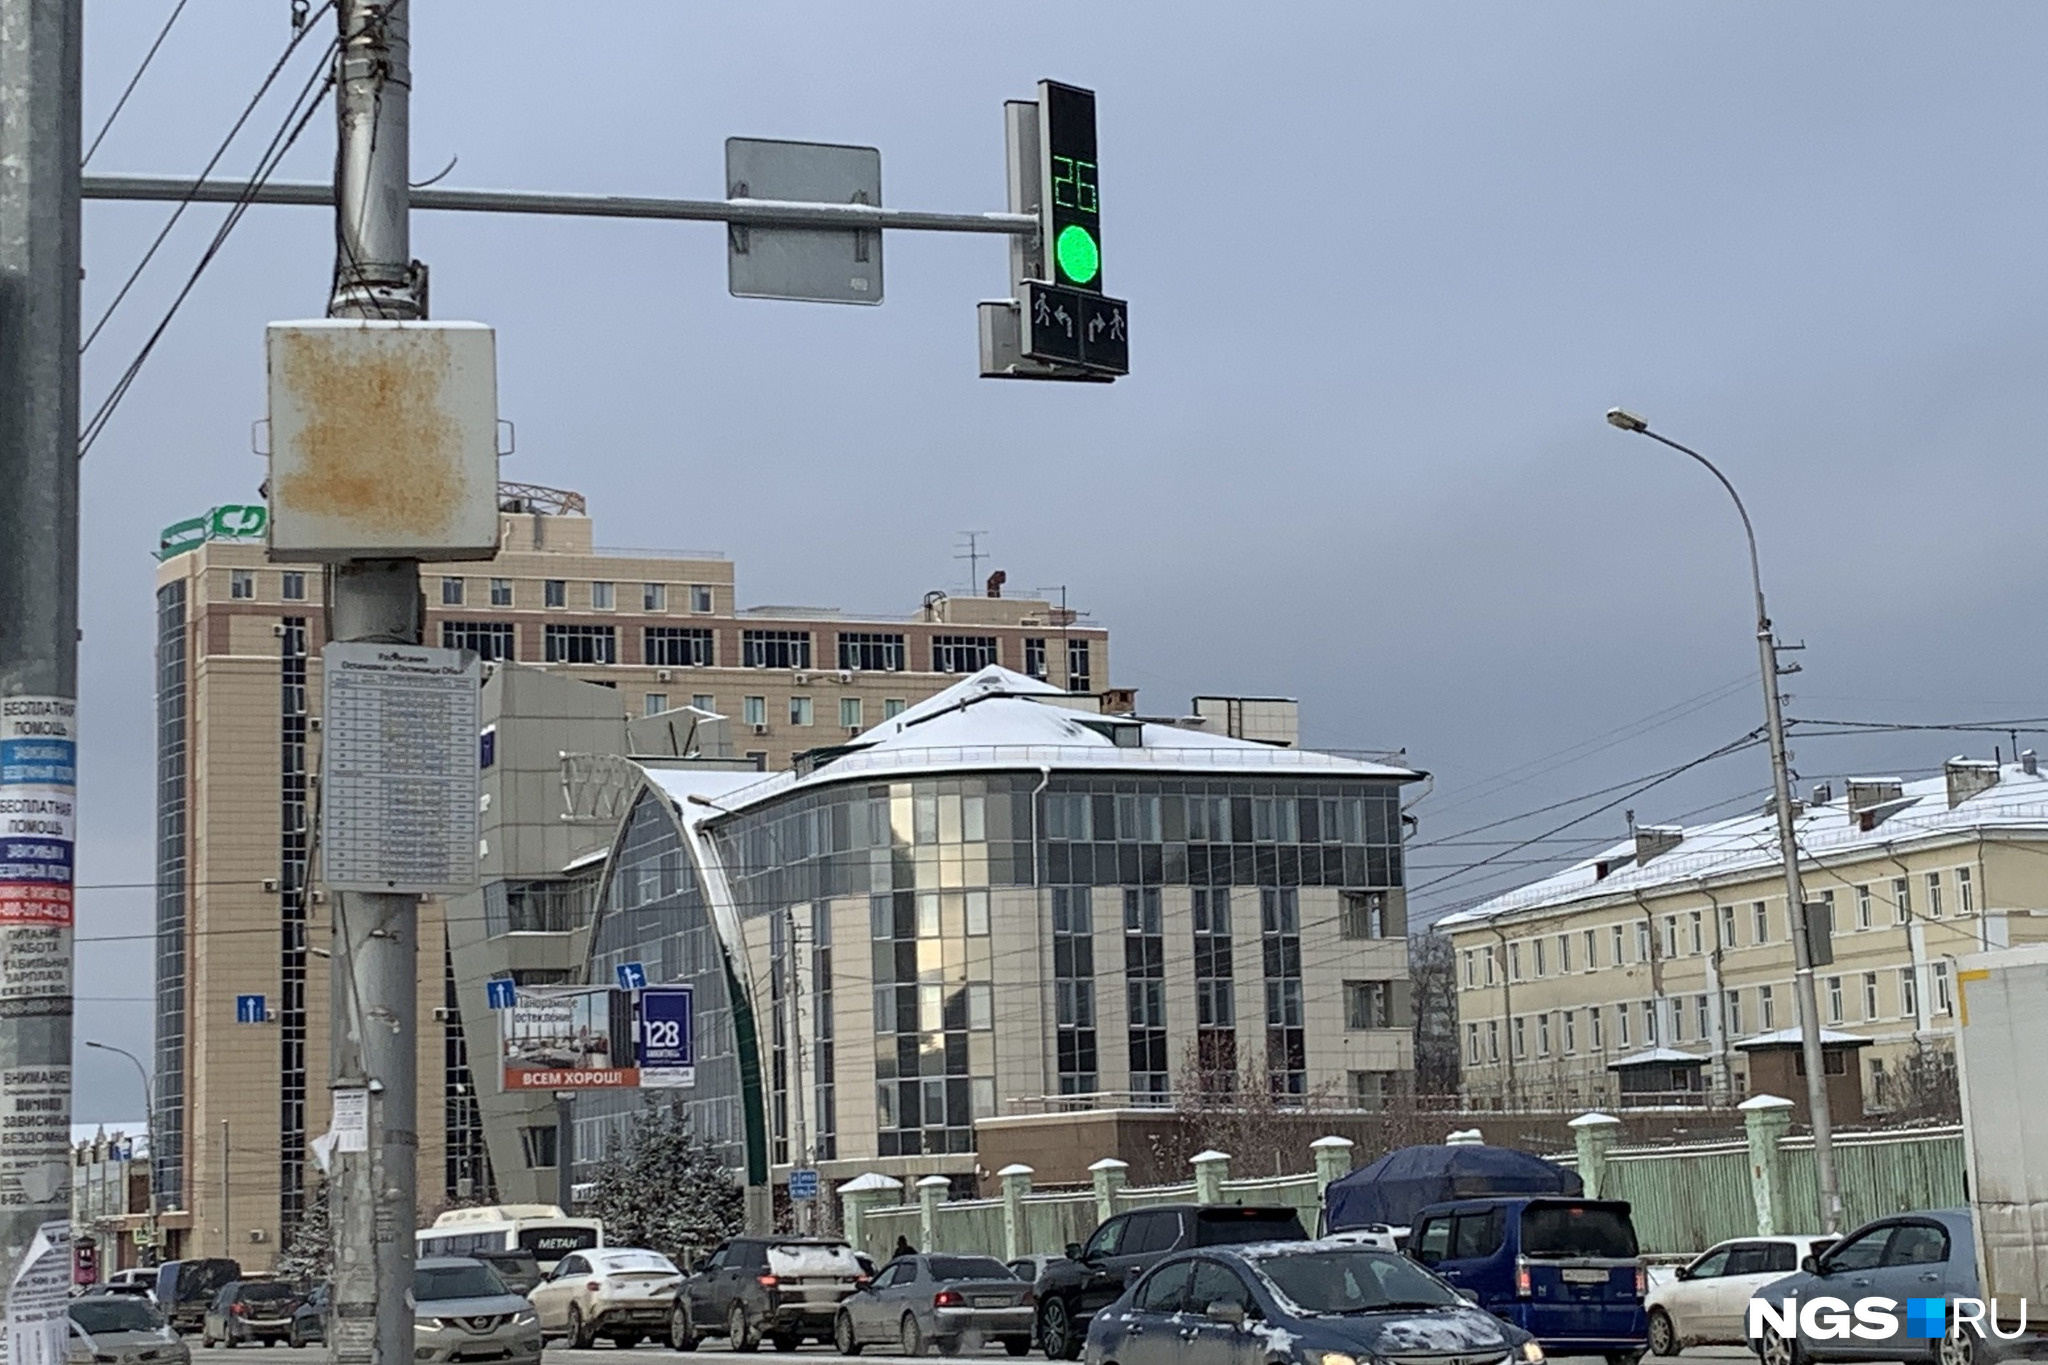 В Новосибирске говорят, что такой вариант намного эффективнее, чем знаки со стрелочками возле светофоров. По сути, он просто предупреждает, что за поворотом — переход с пешеходами